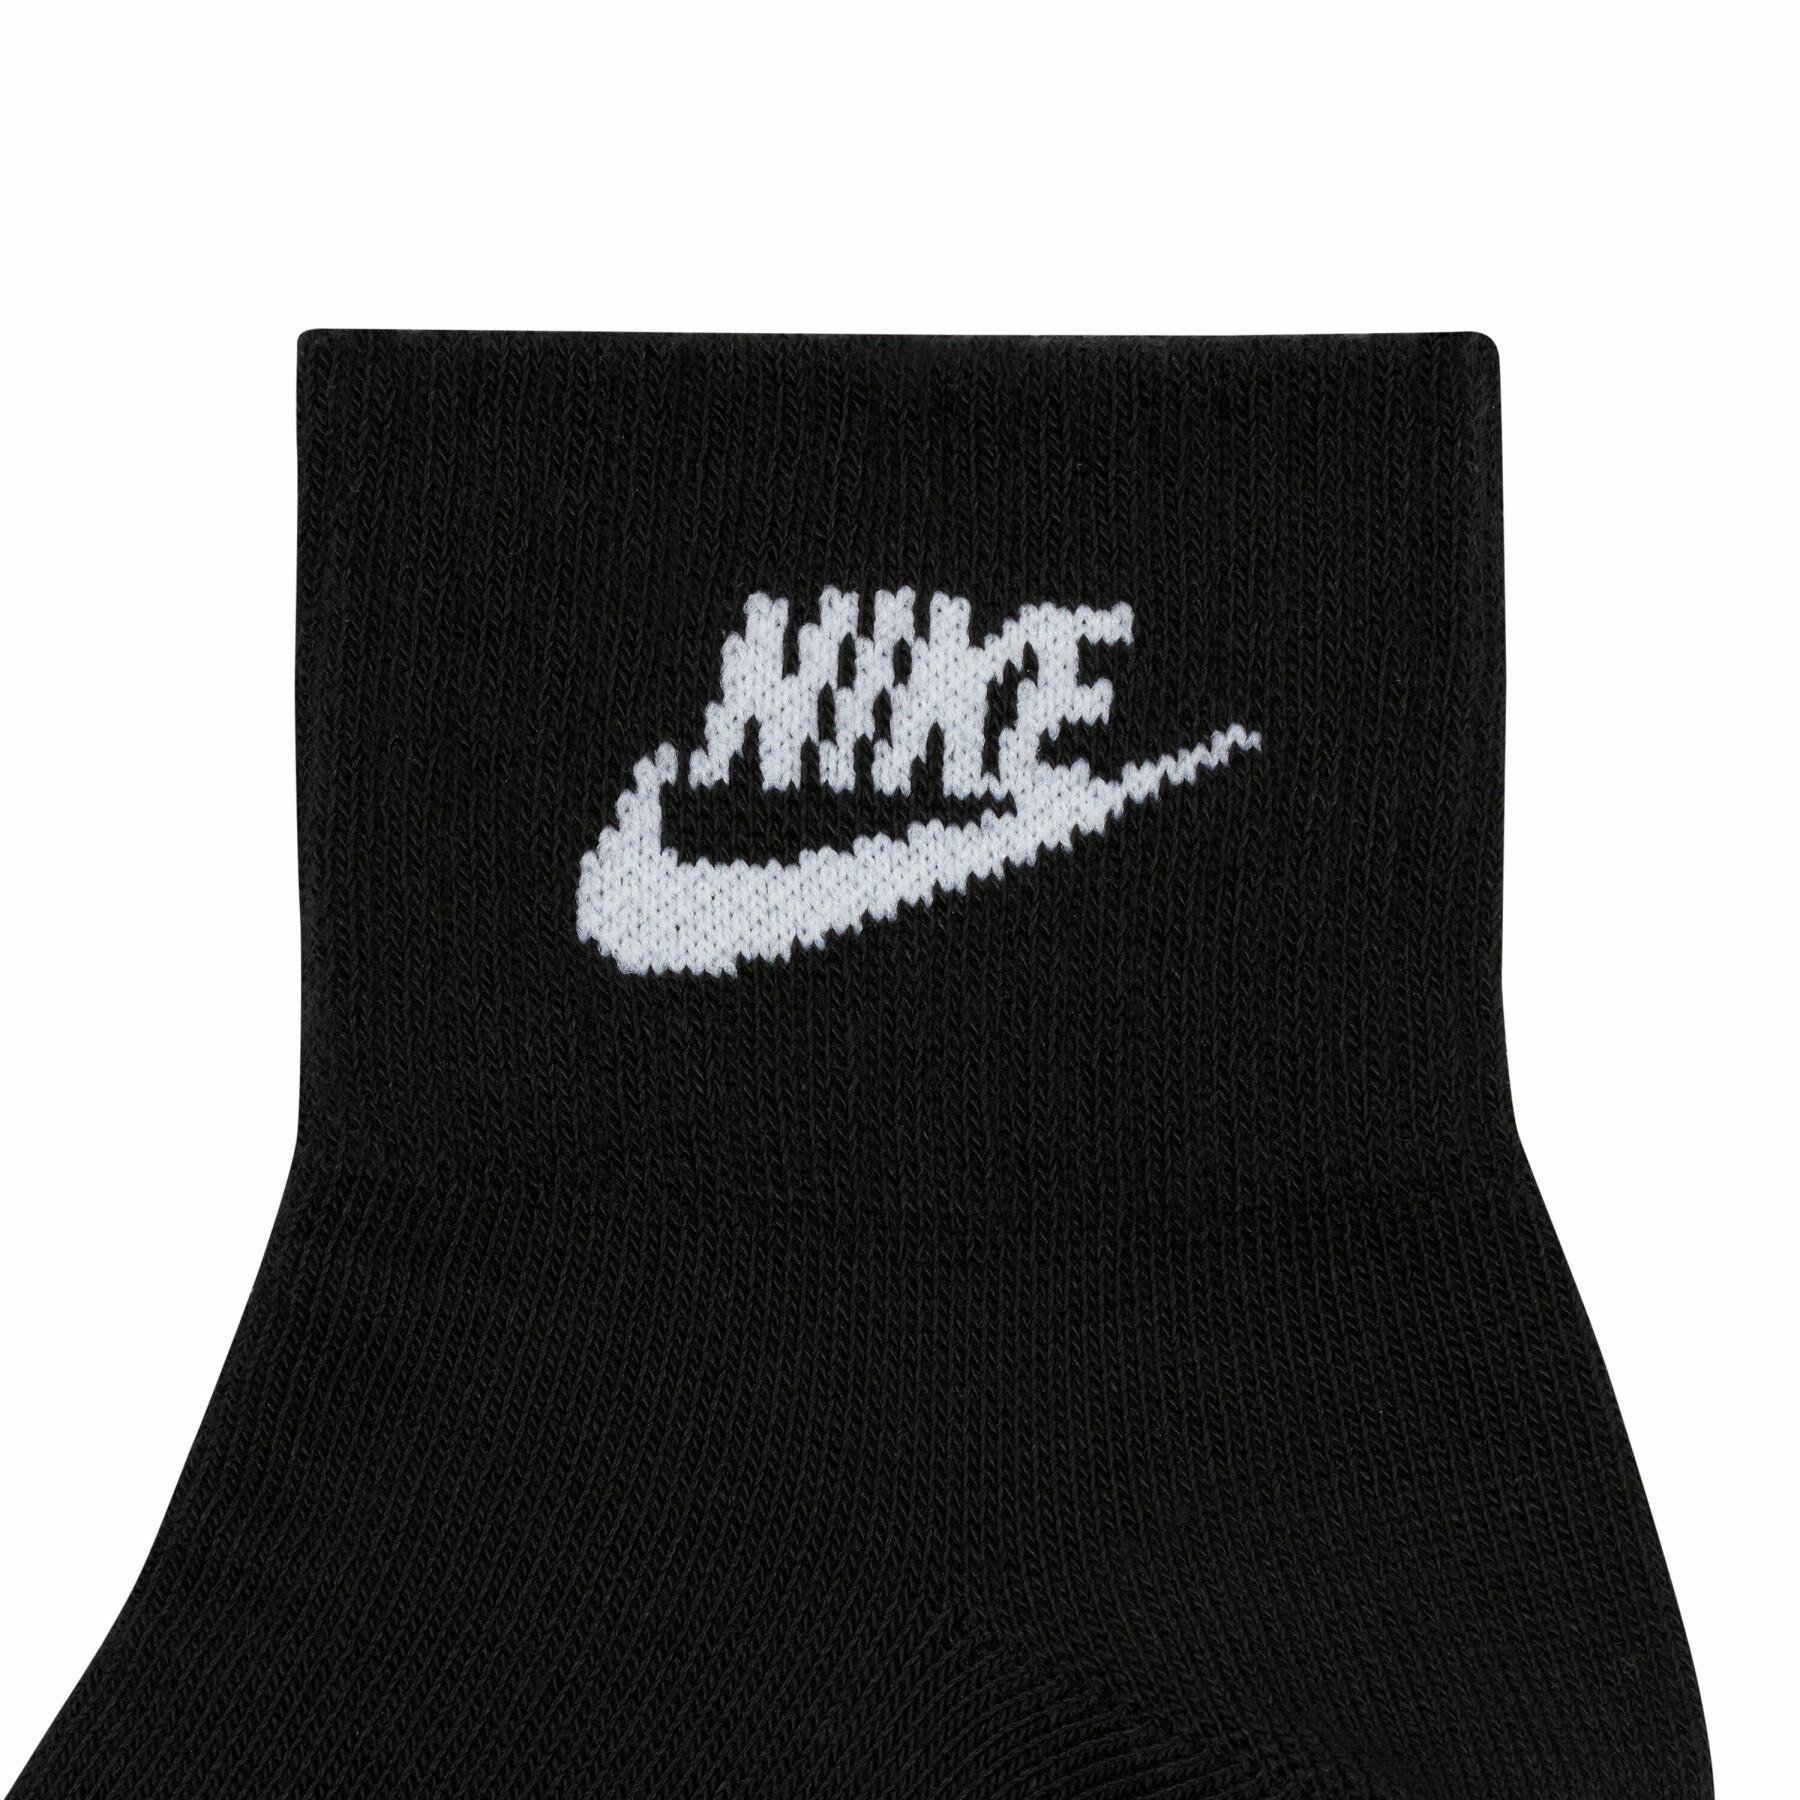 Sokken Nike nsw everyday essential